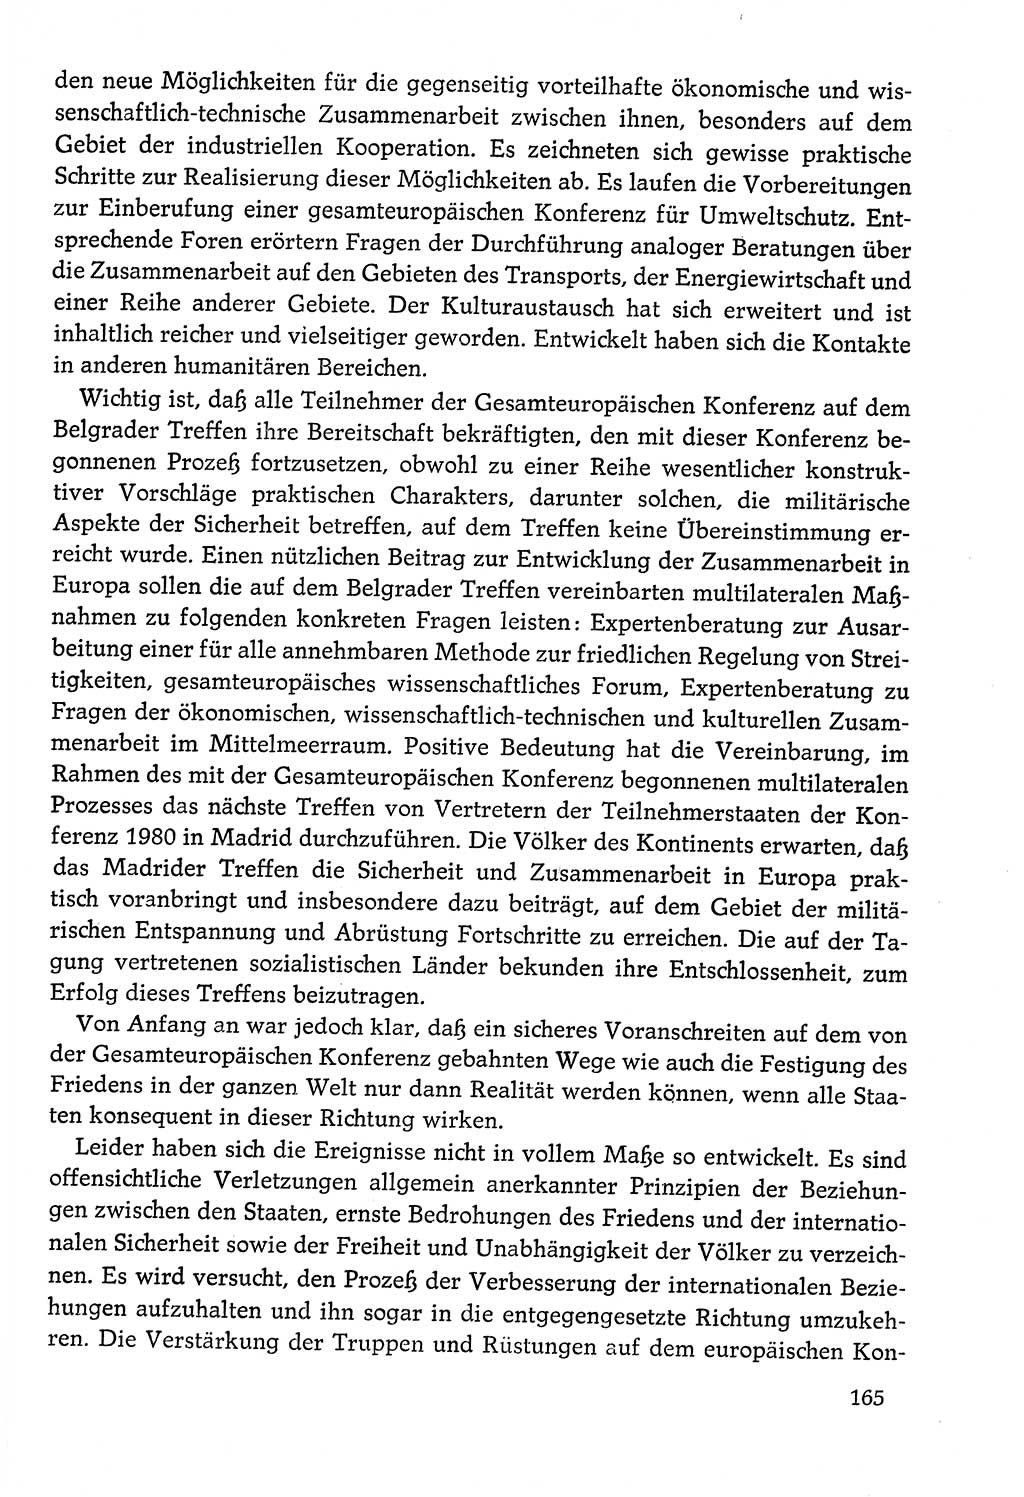 Dokumente der Sozialistischen Einheitspartei Deutschlands (SED) [Deutsche Demokratische Republik (DDR)] 1978-1979, Seite 165 (Dok. SED DDR 1978-1979, S. 165)